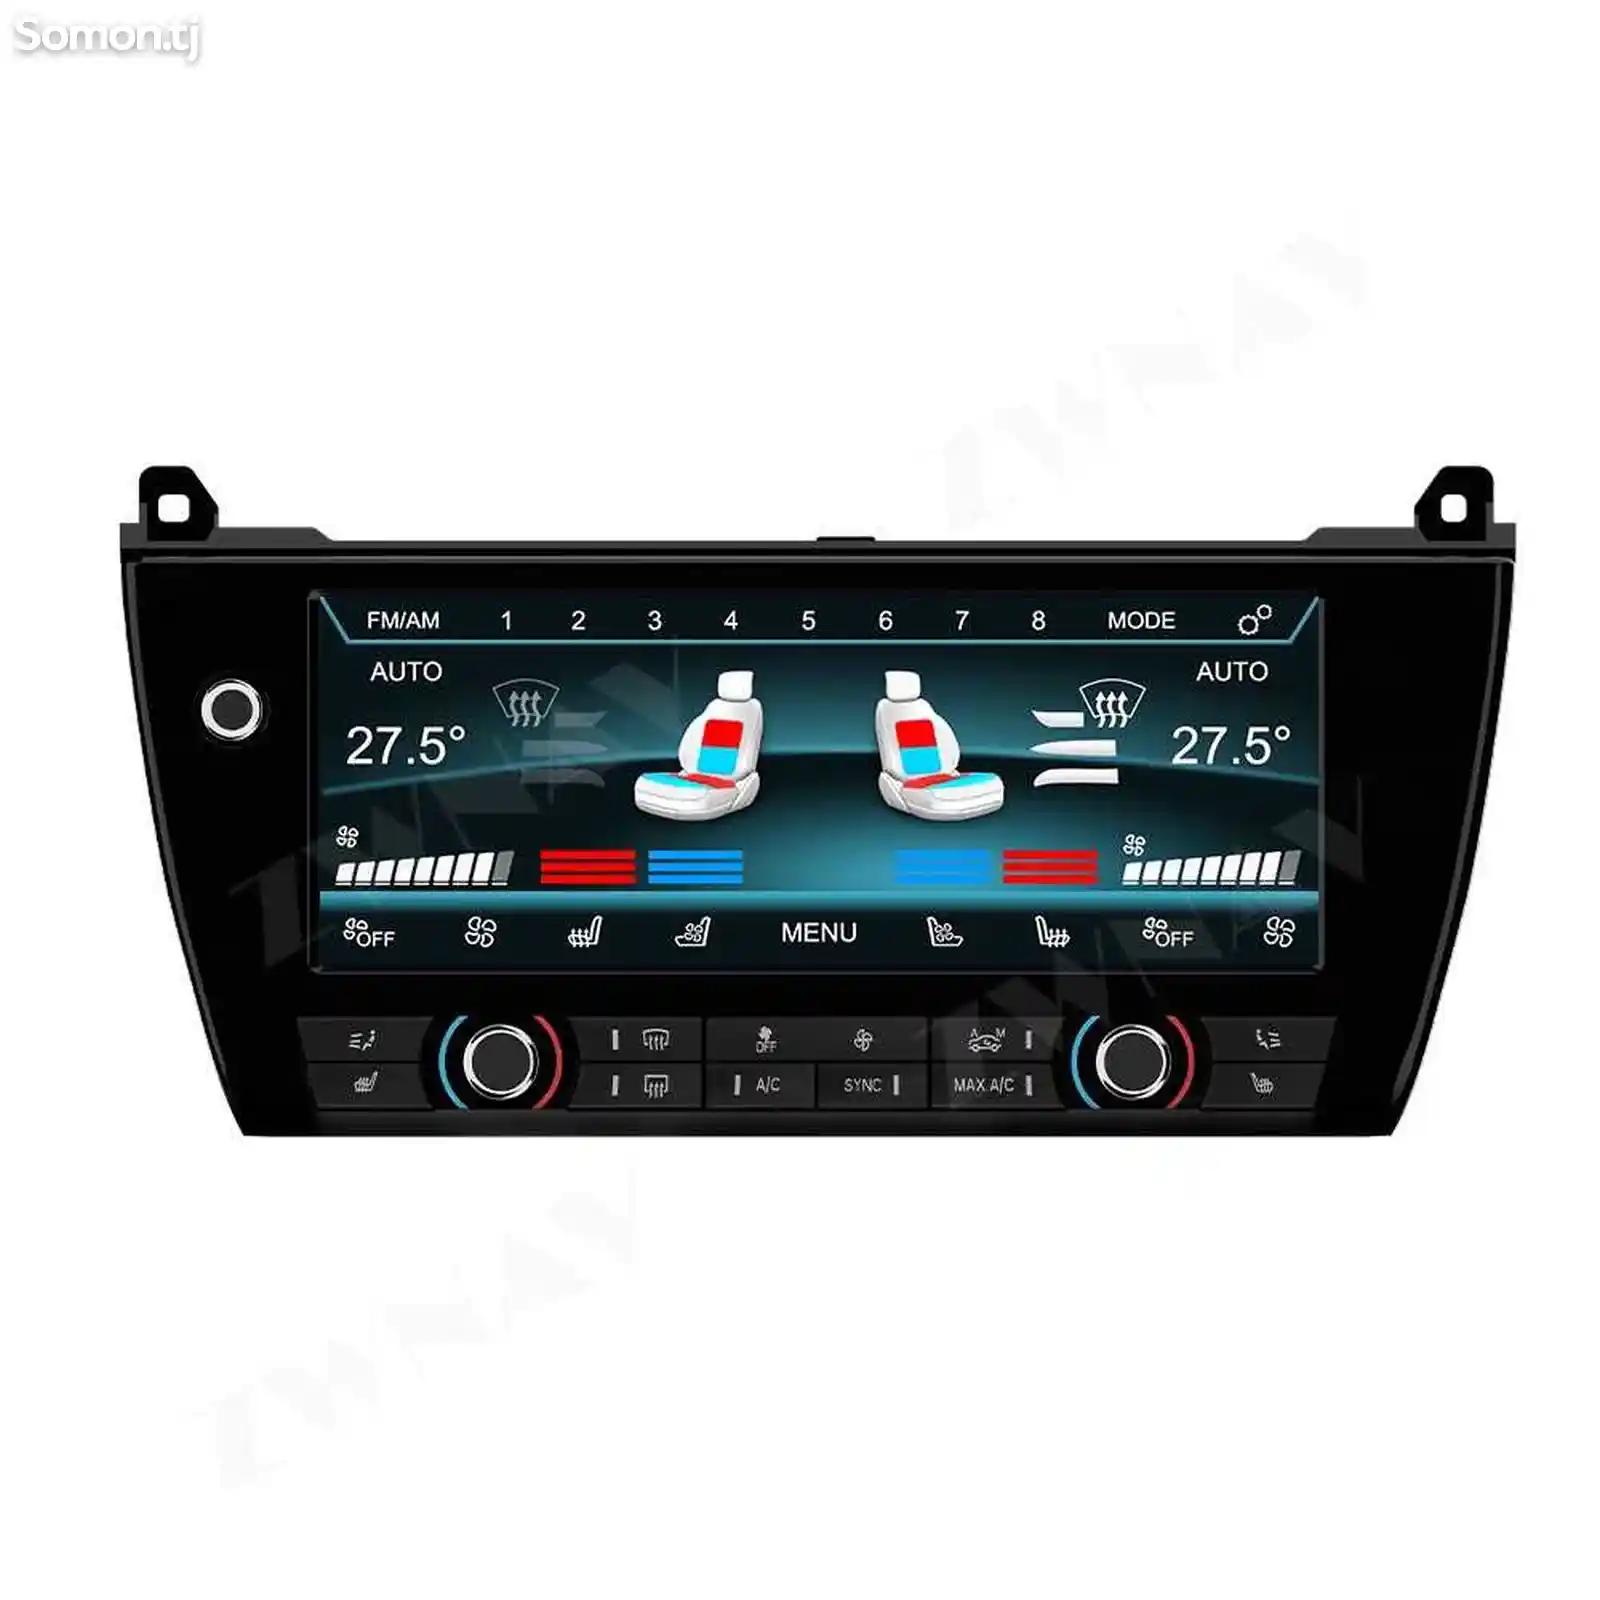 Сенсорный климат контроль для BMW F10 2011-2017-4